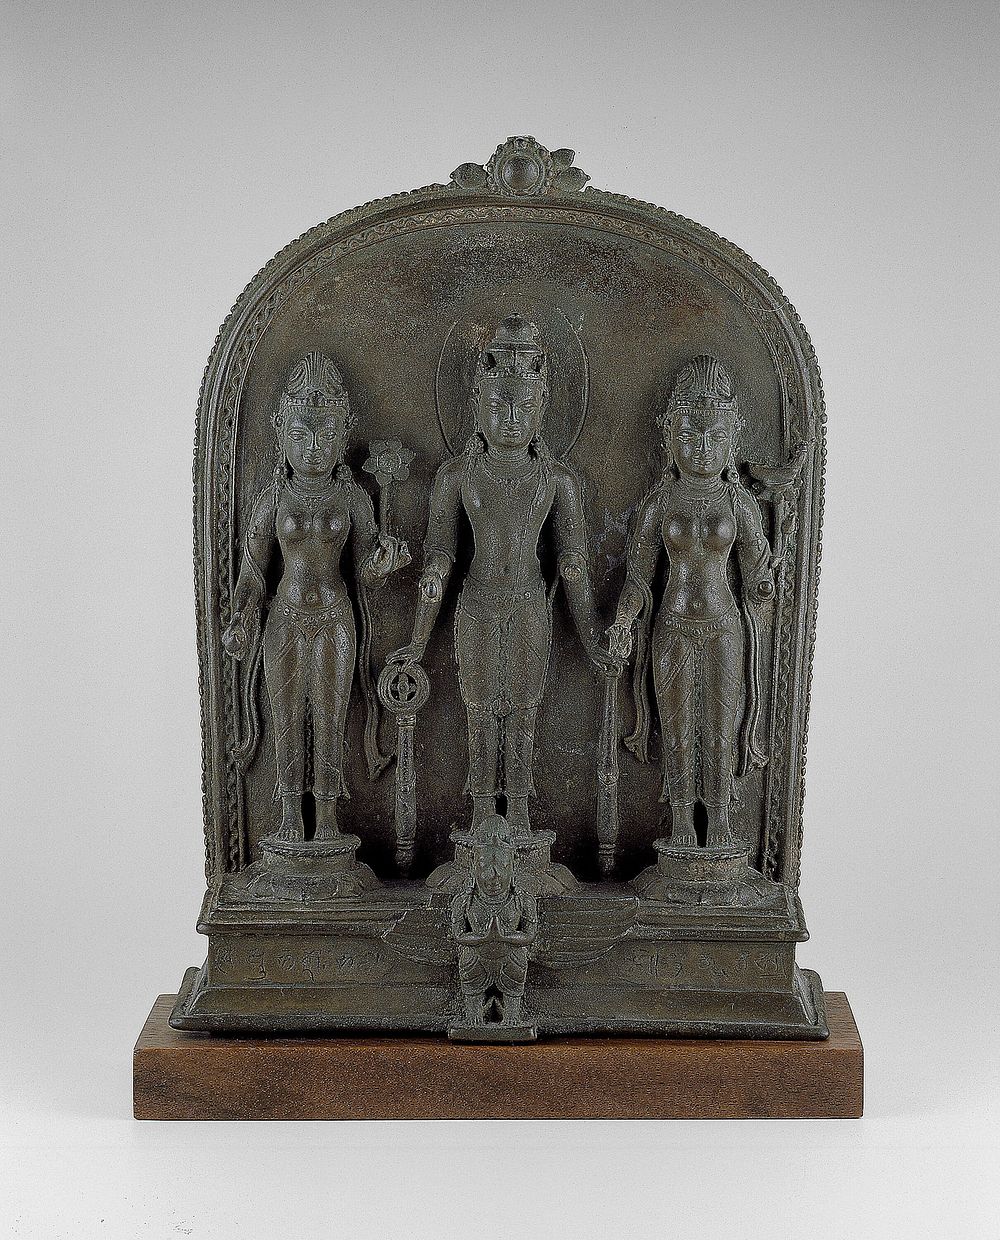 God Vishnu with Lakshmi and Sarasvati